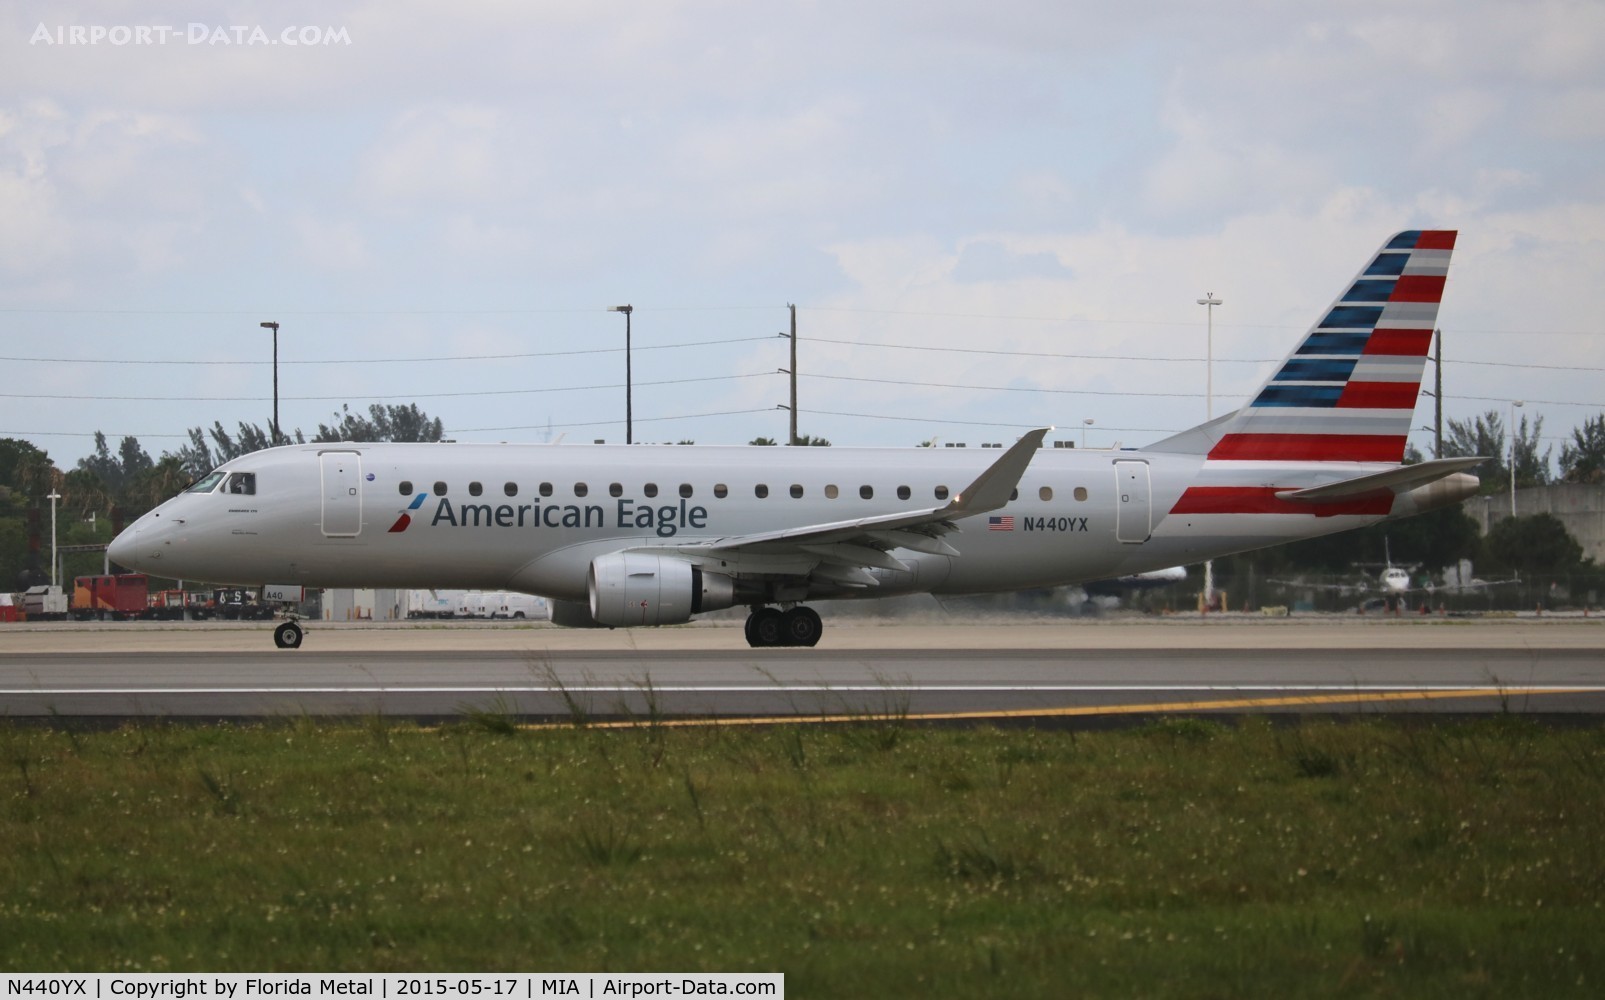 N440YX, 2014 Embraer 175LR (ERJ-170-200LR) C/N 17000435, American Eagle